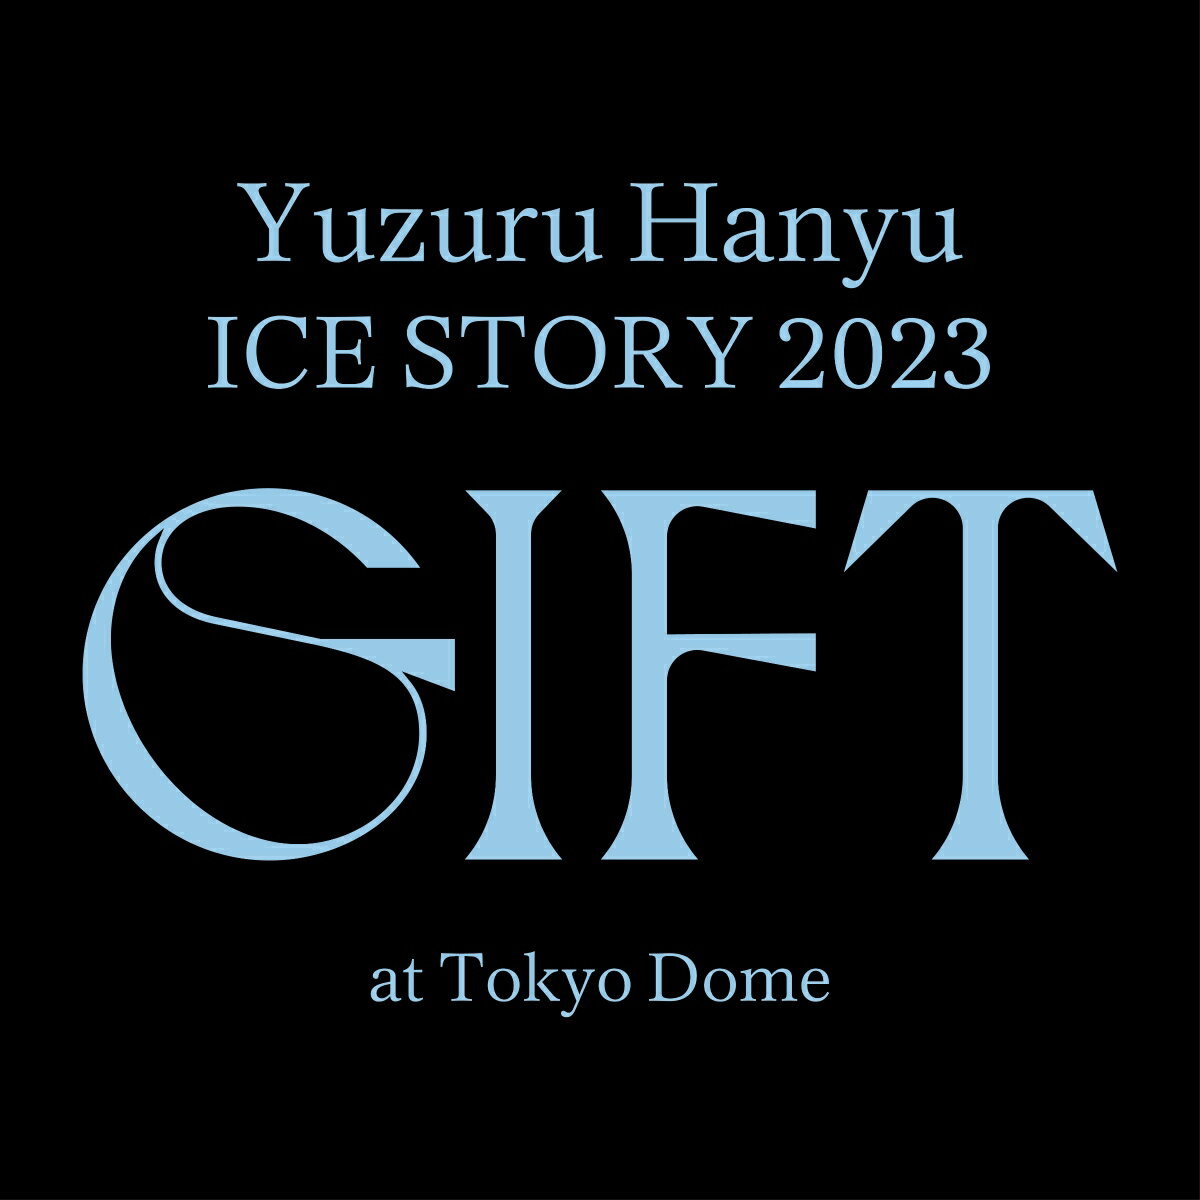 Yuzuru Hanyu ICE STORY 2023 “G